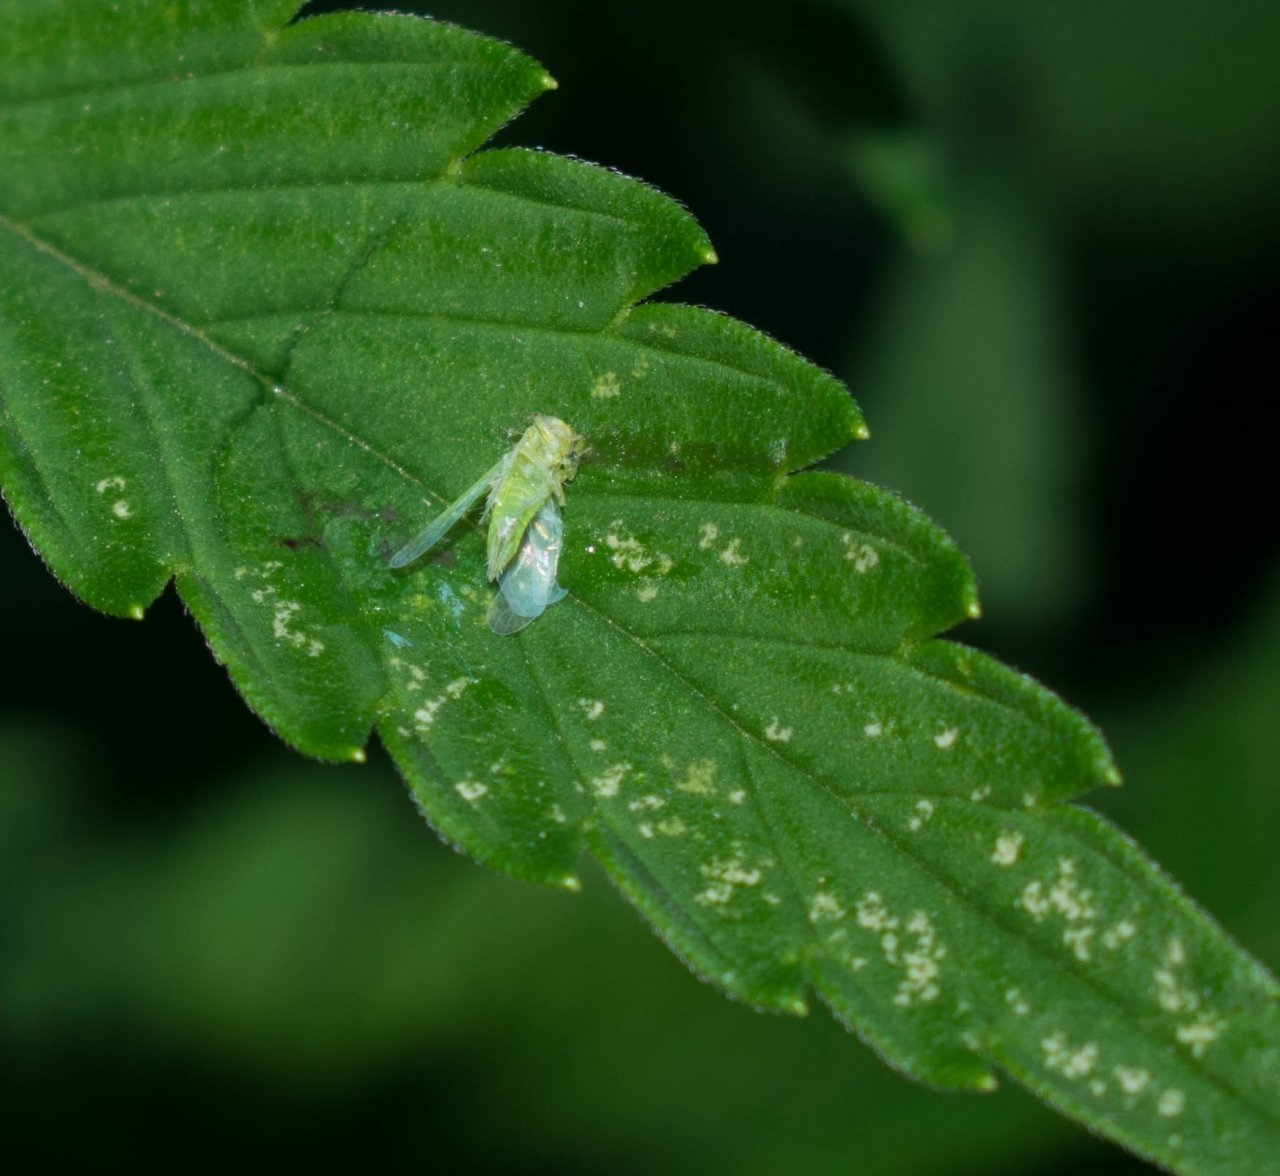 An unlucky leafhopper